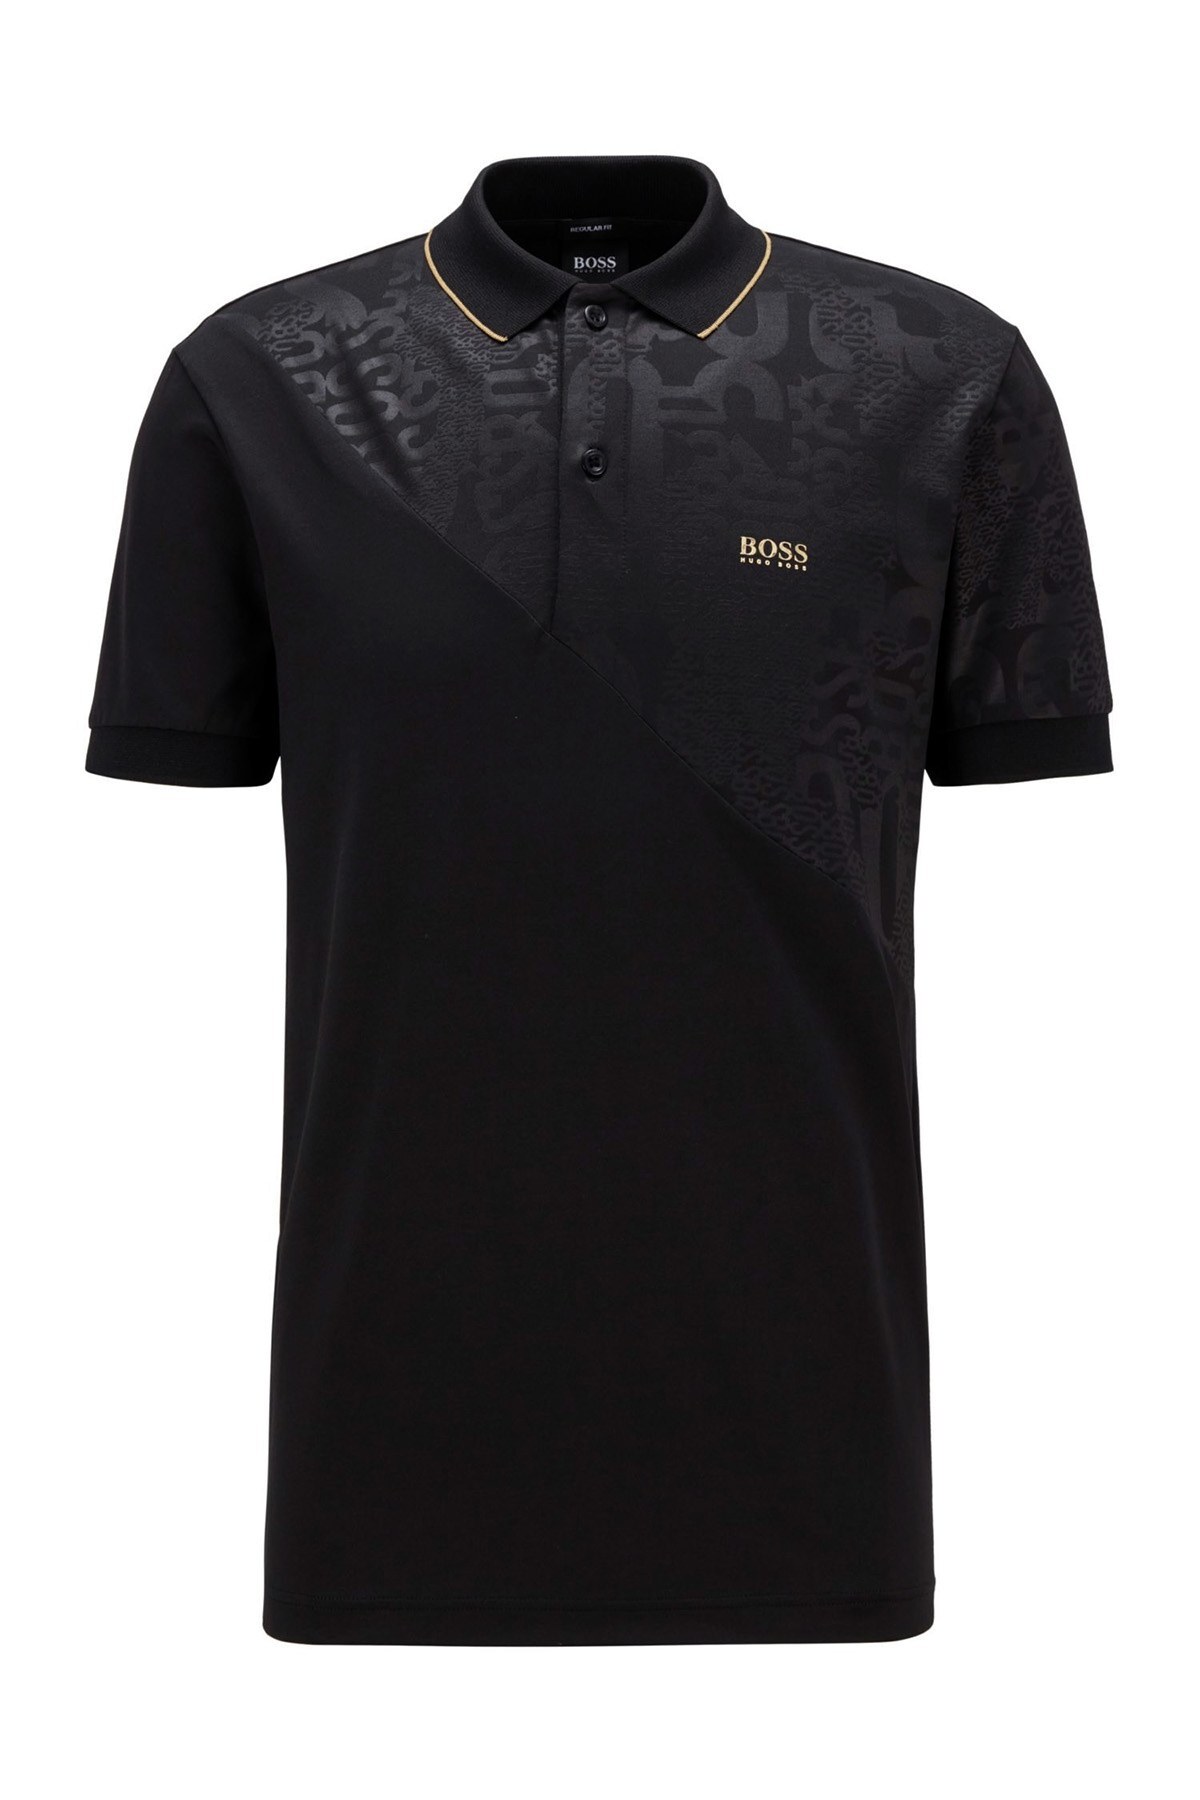 Hugo Boss Pamuklu T Shirt Erkek Polo 50447393 001 SİYAH